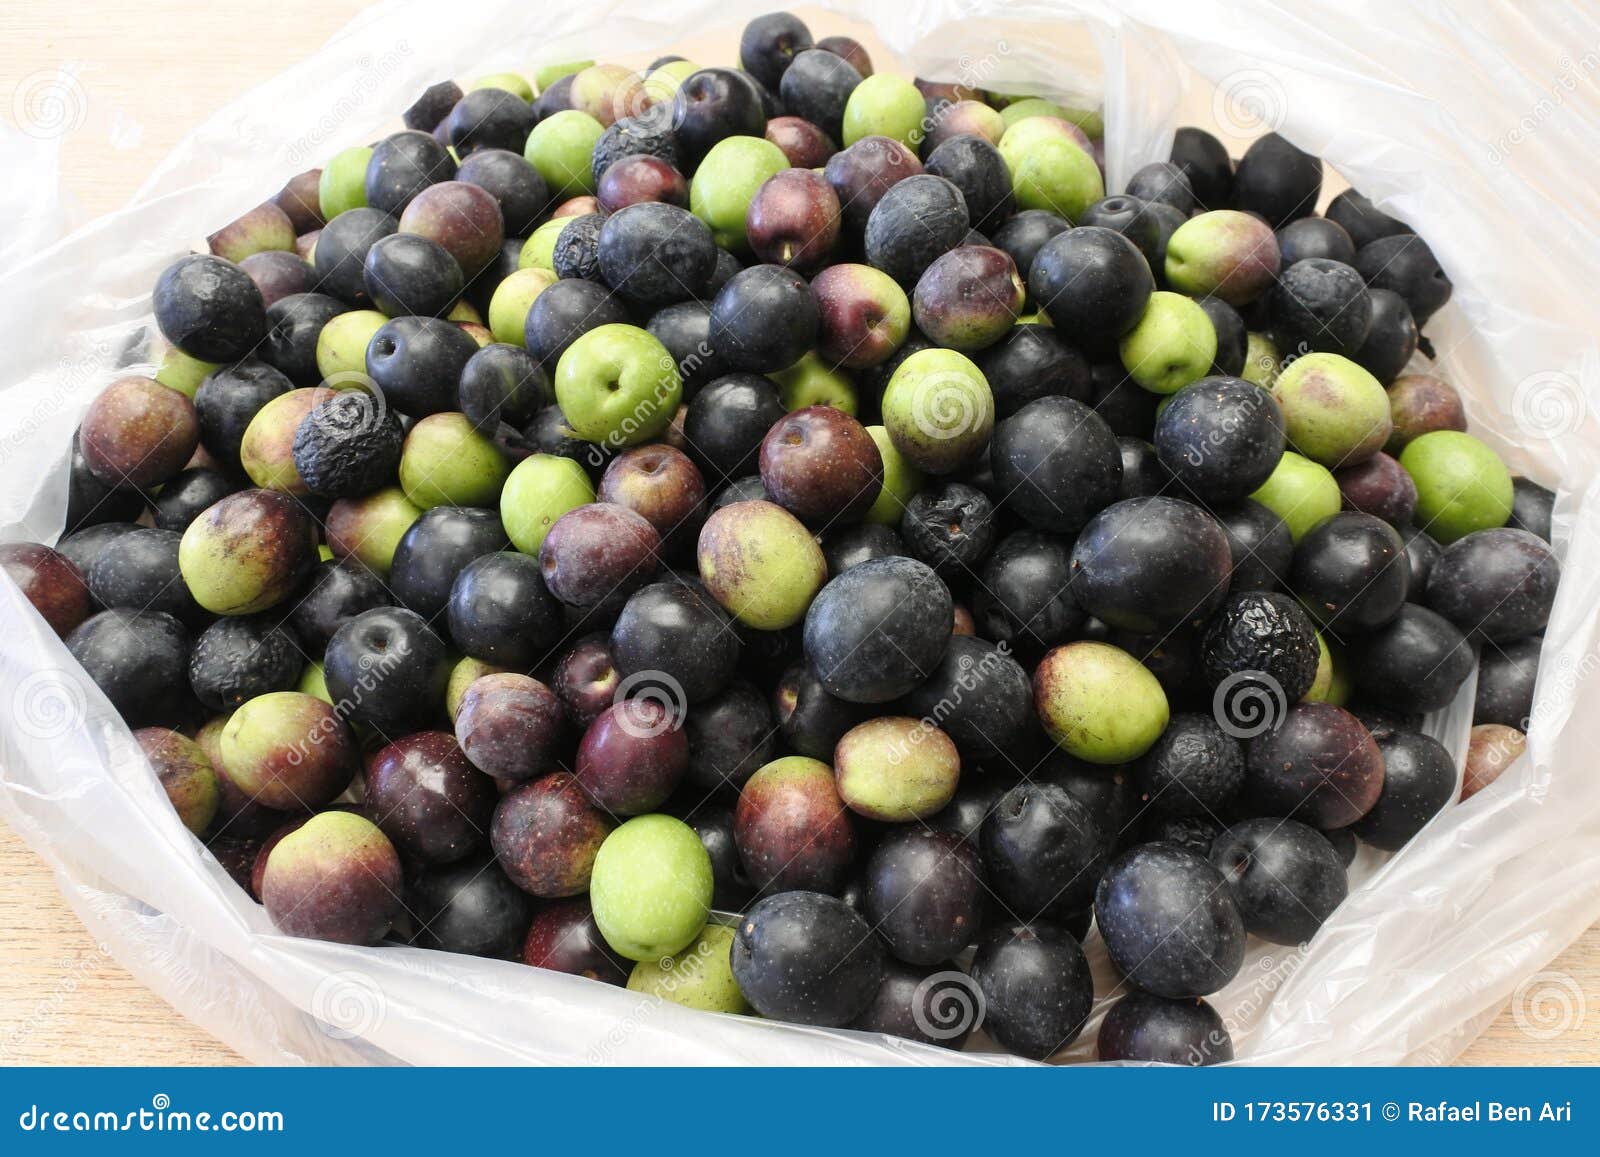 many manzanilla olives in a bag